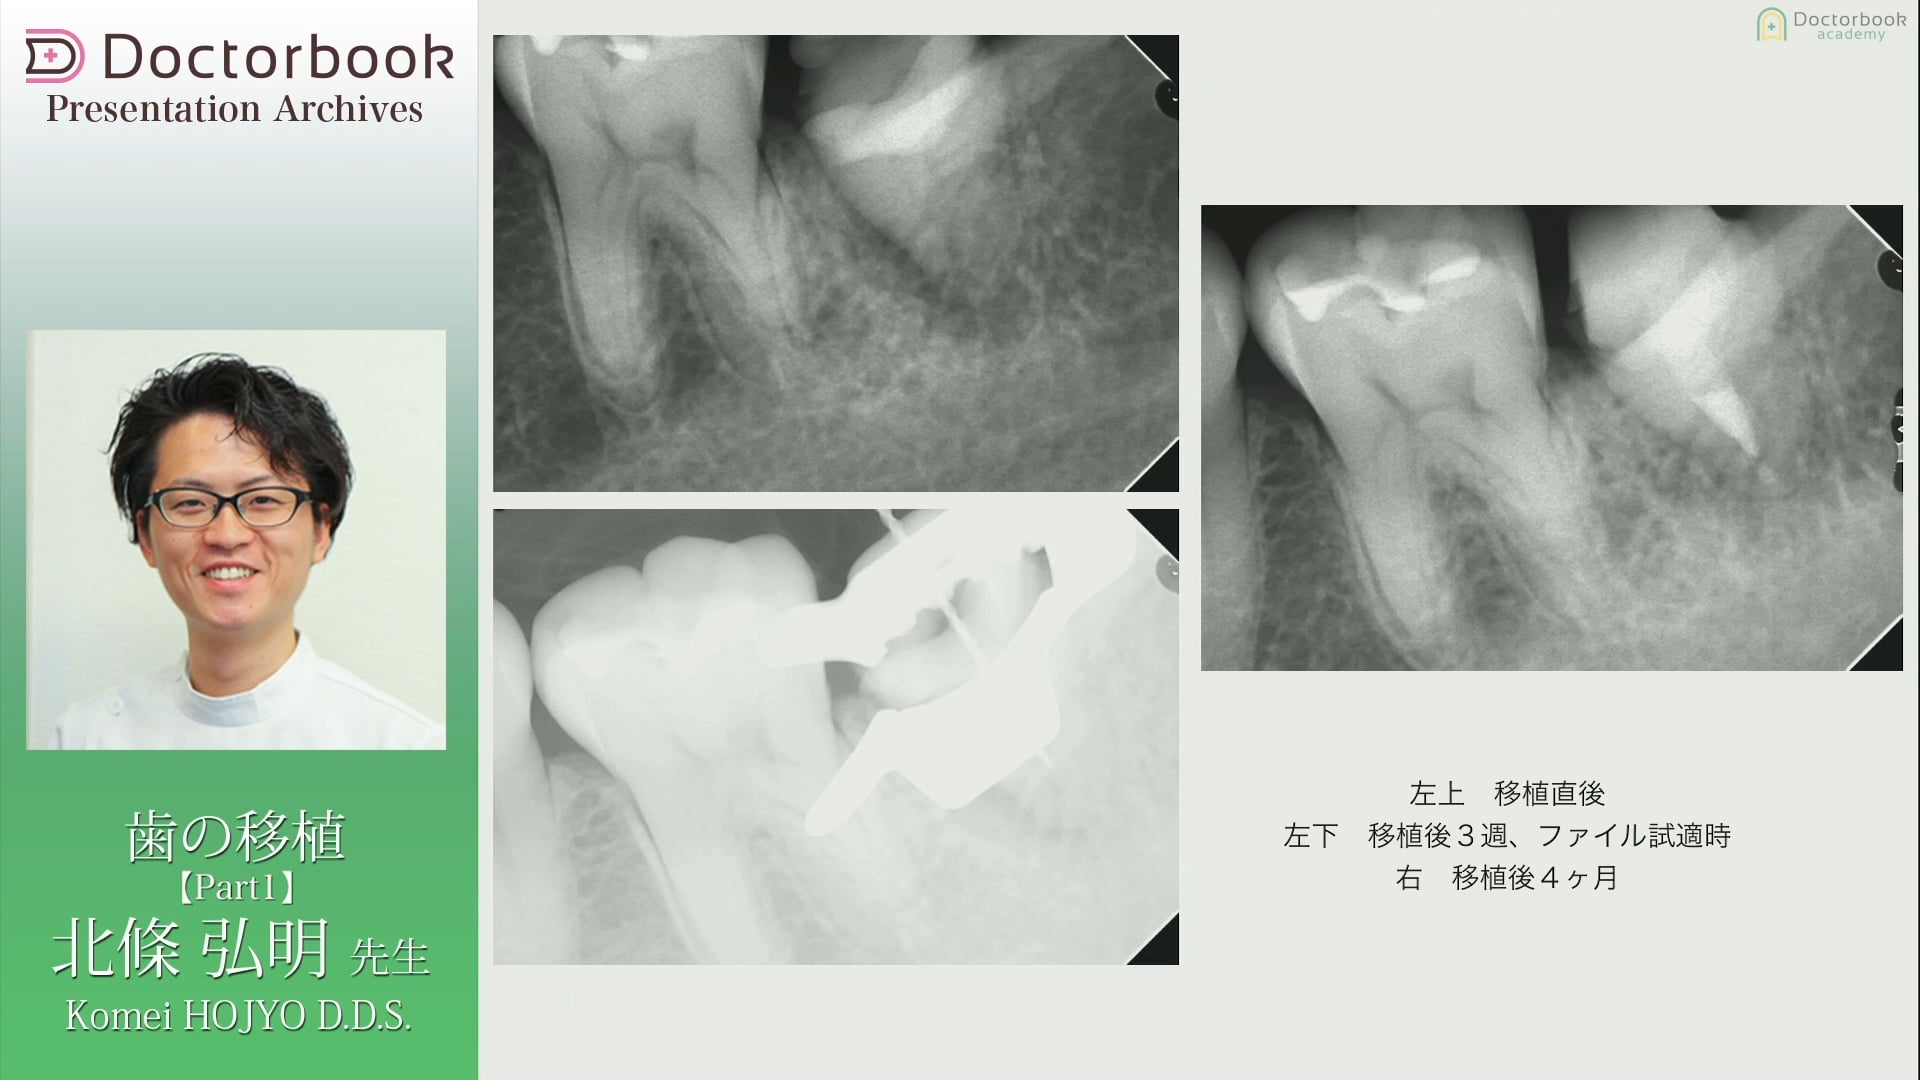 #1 左下７抜歯窩に水平埋伏歯を移植した症例